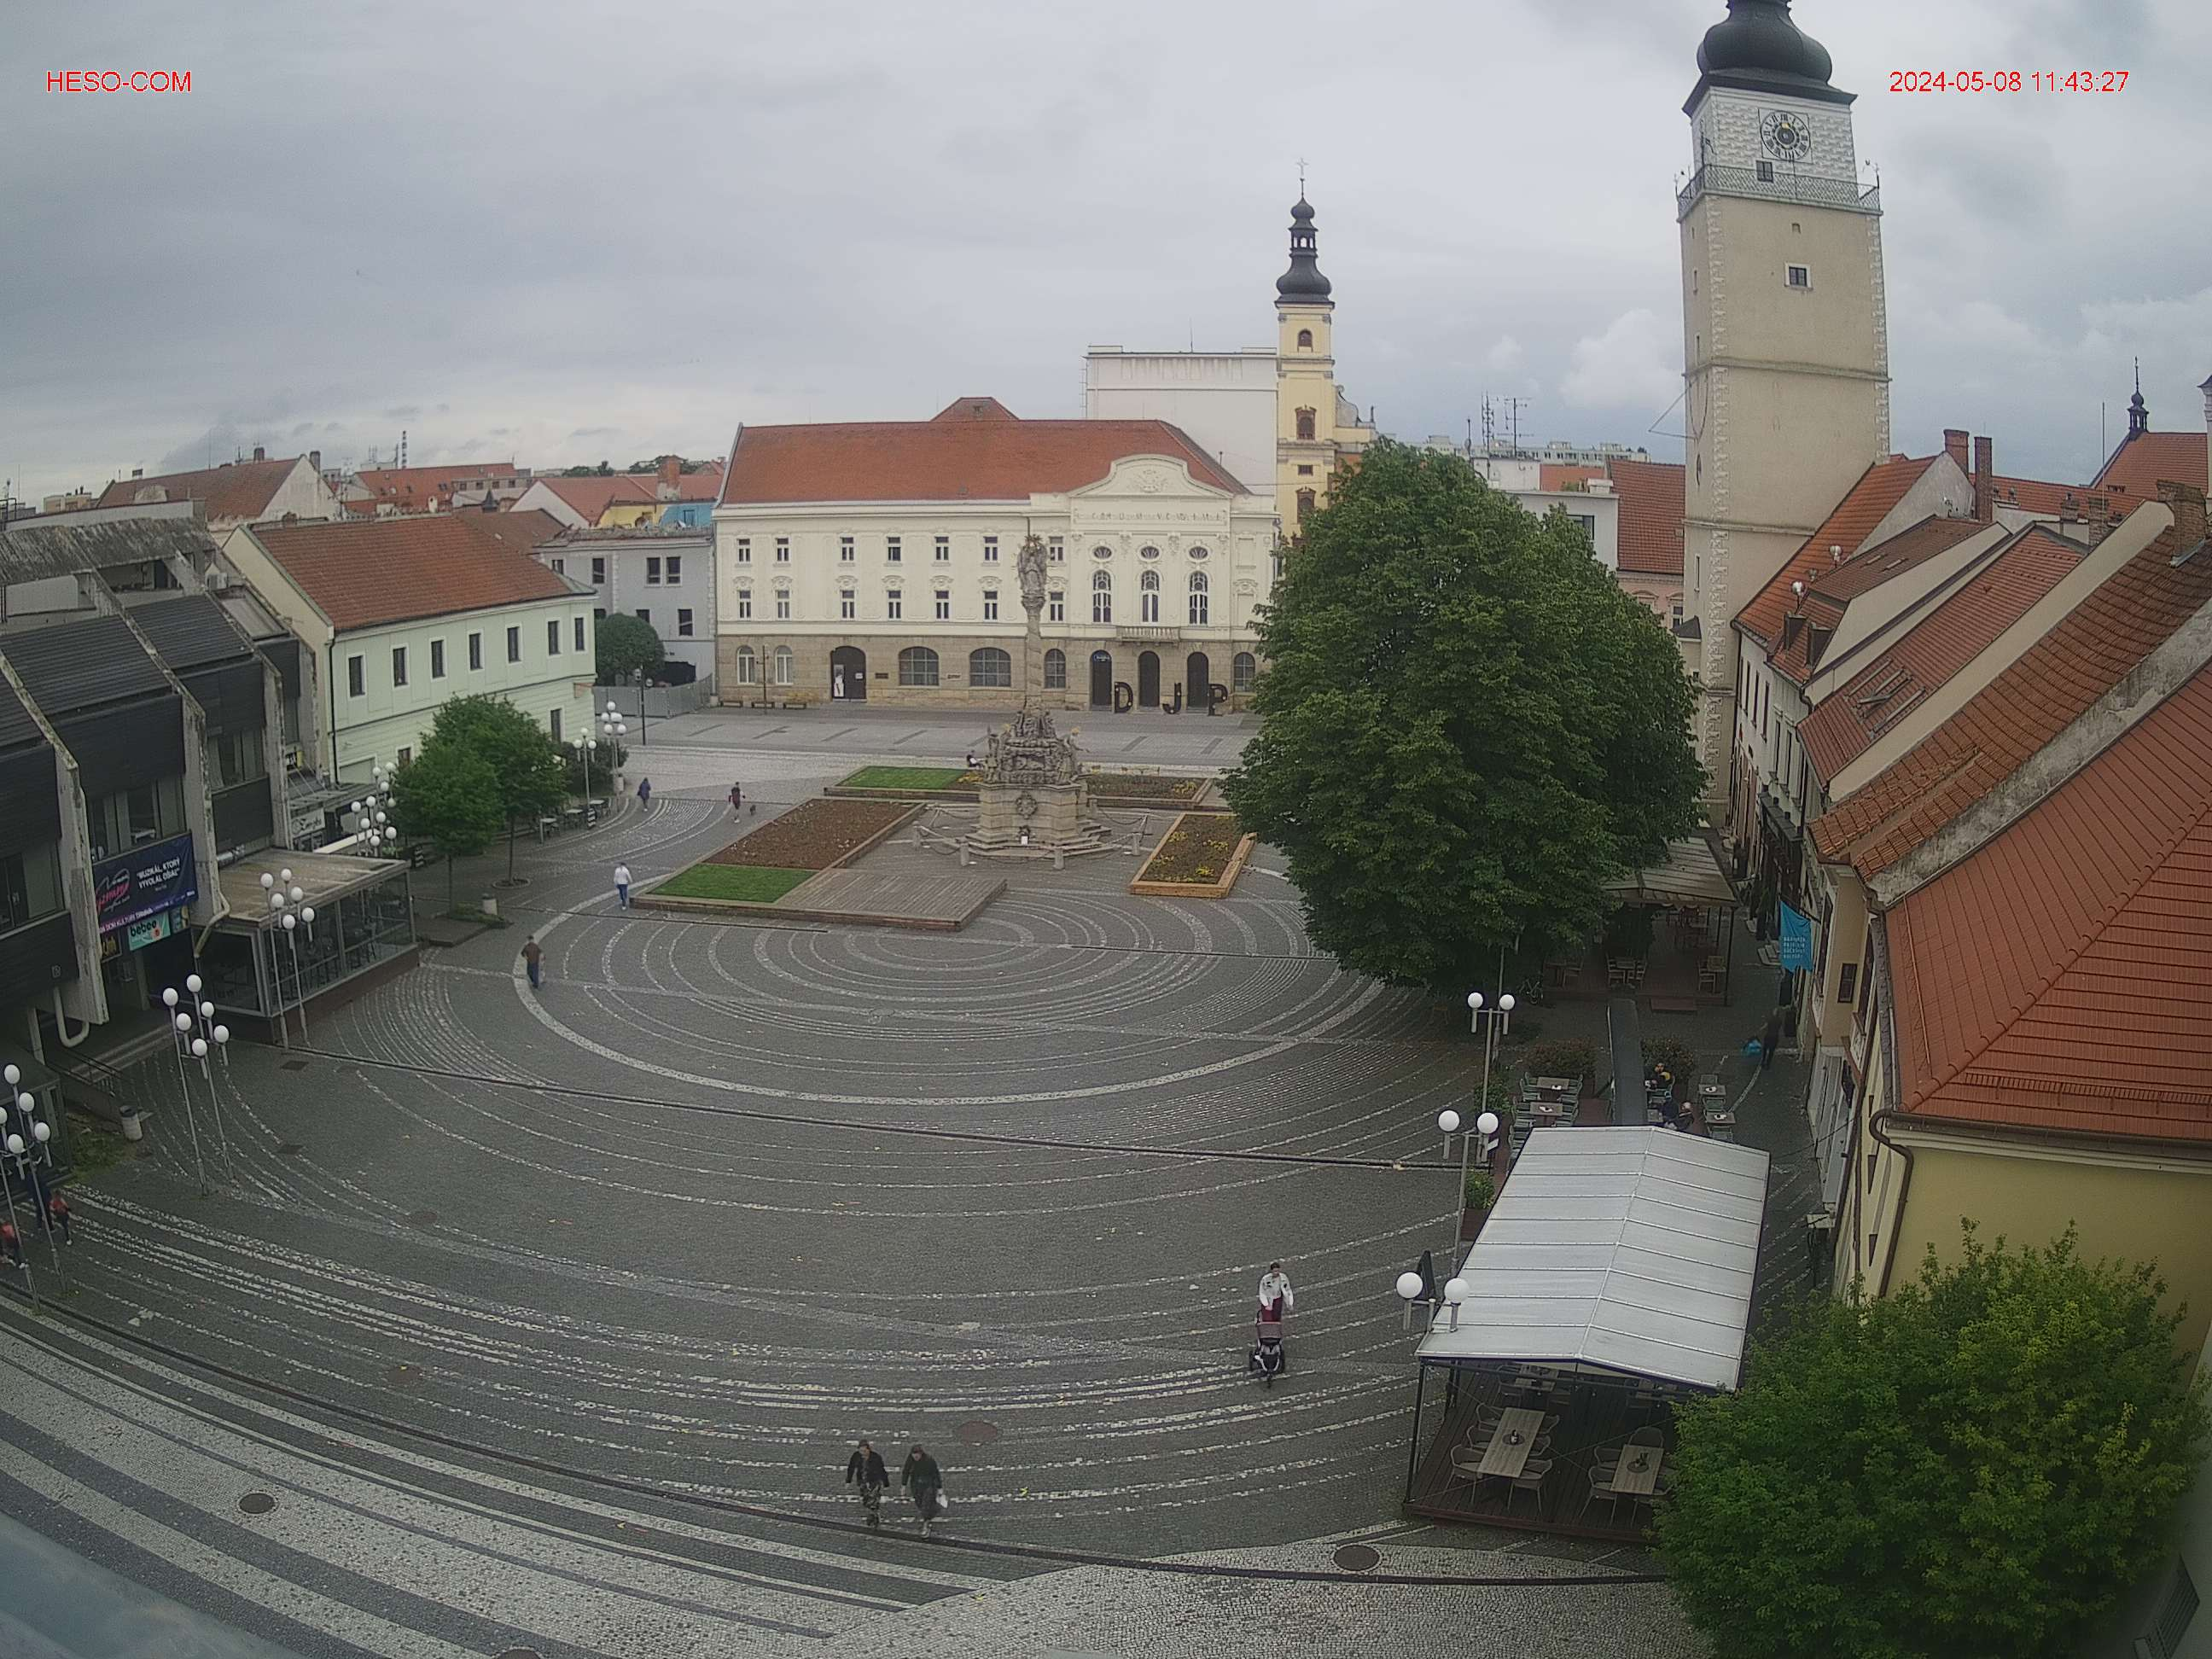 Trnava, die erste privilegierte Königstadt in der Slowakei.